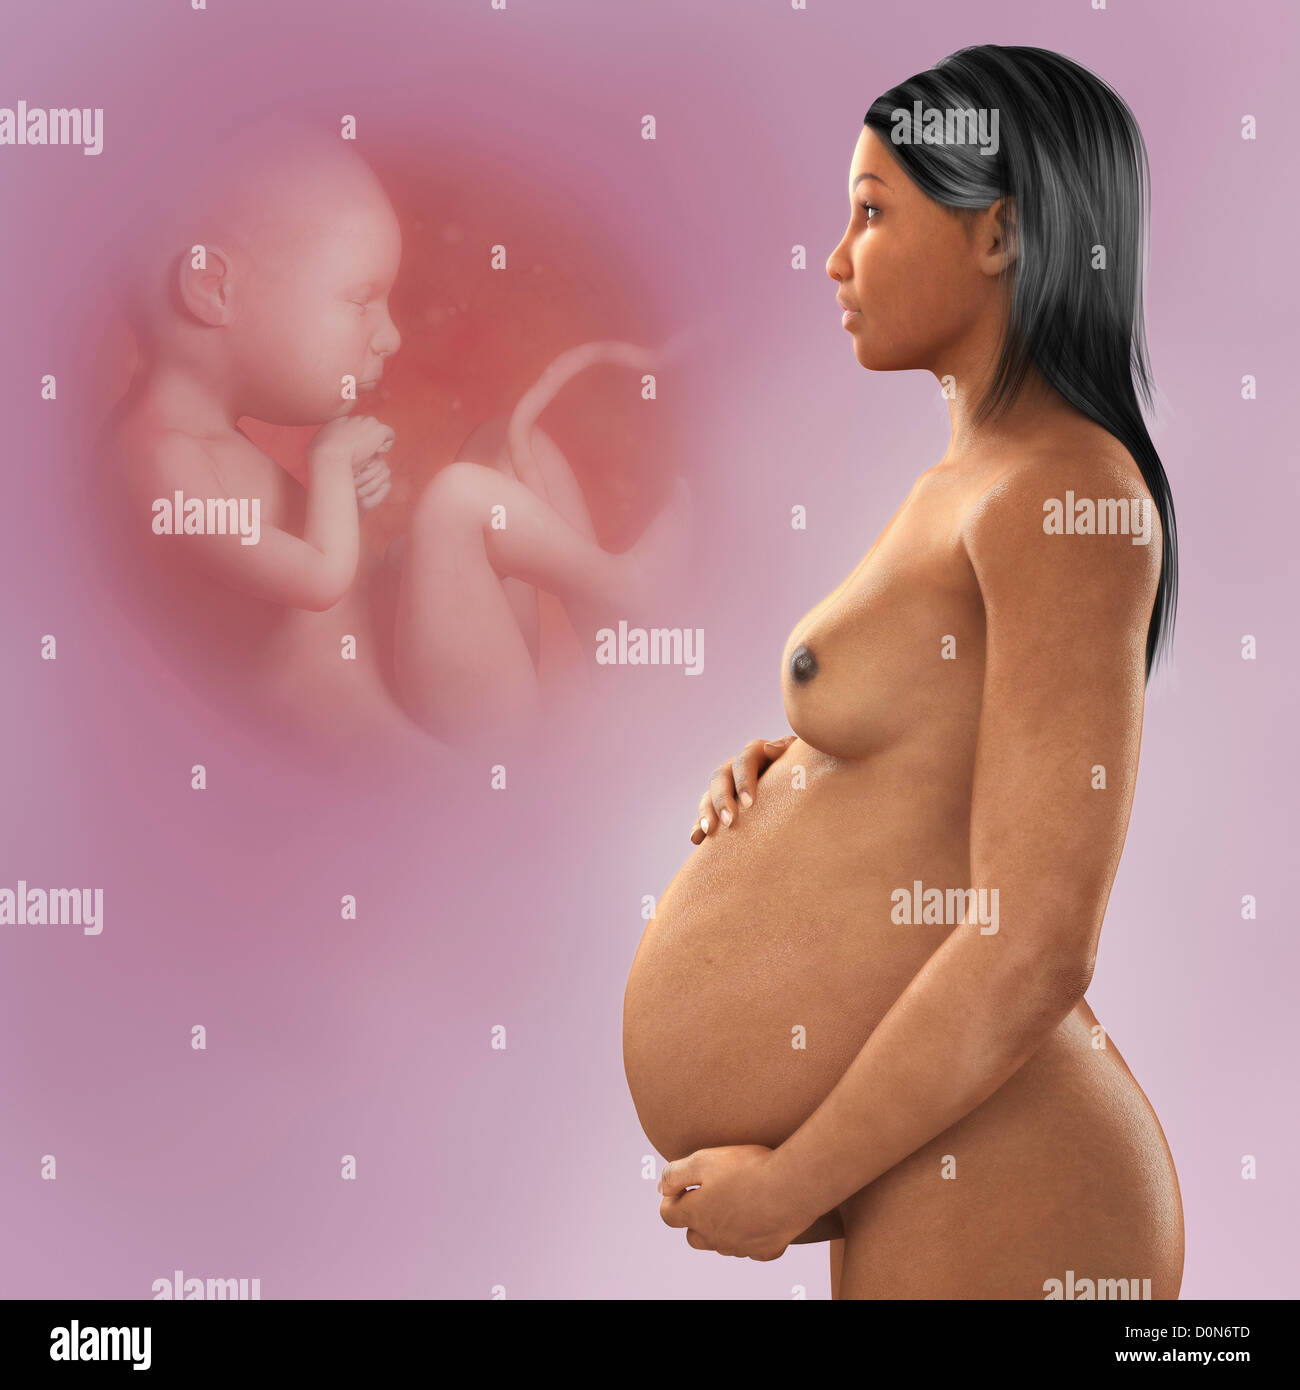 La gravidanza di una figura femminile di etnia africana sullo sfondo di un feto in sviluppo nel grembo. Foto Stock